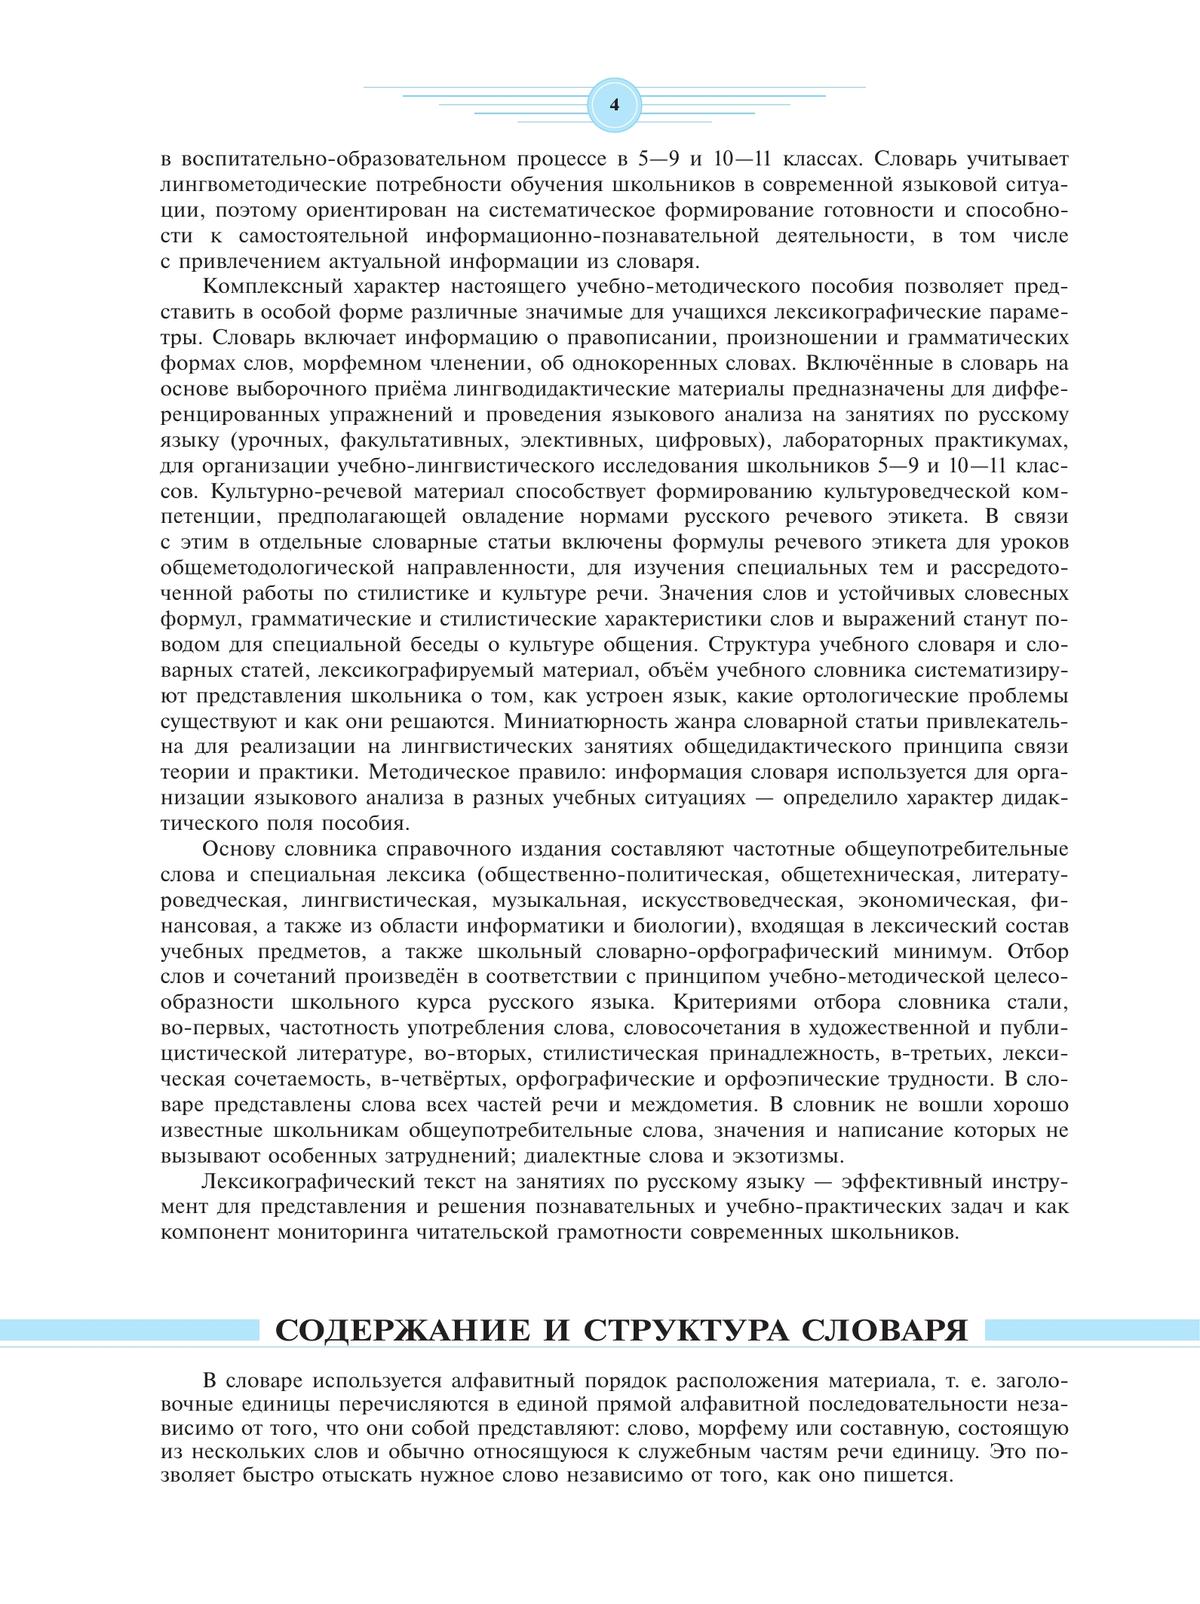 Универсальный словарь русского языка для школьников: более 5000 словарных статей 10